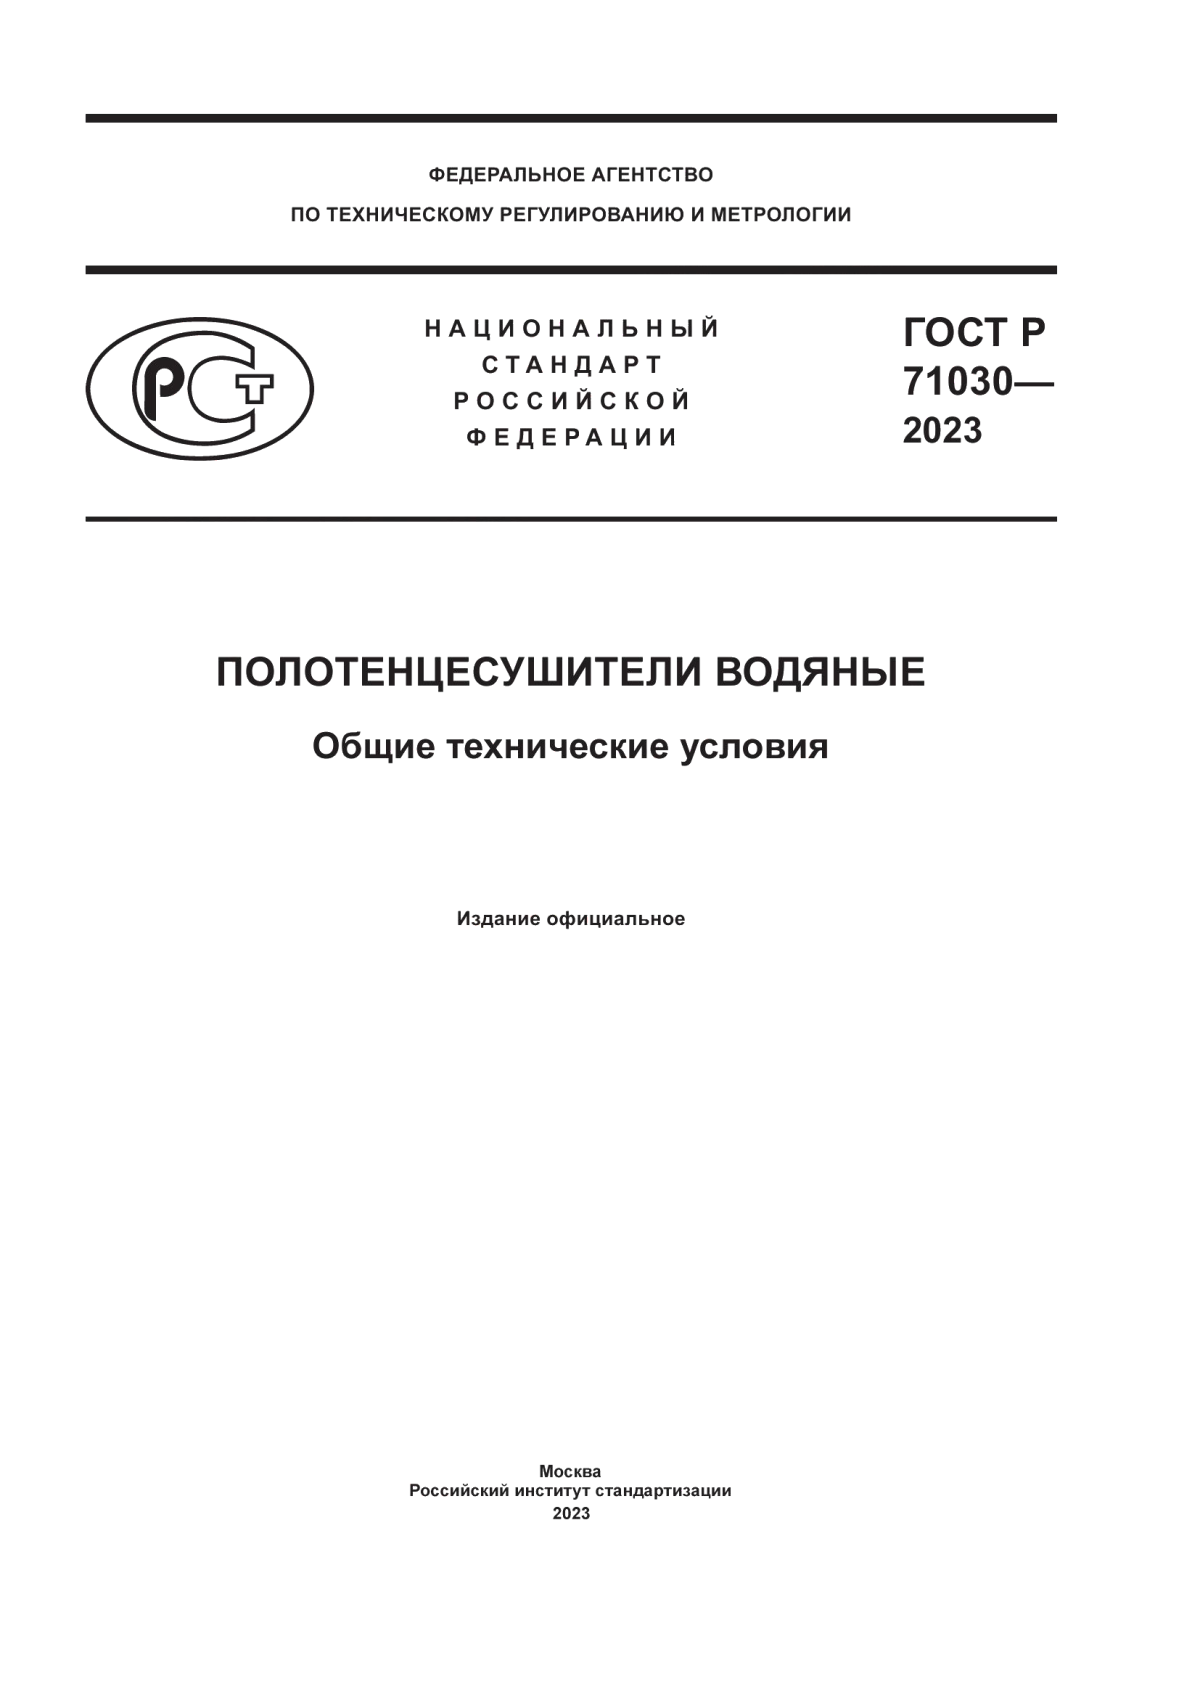 ГОСТ Р 71030-2023 Полотенцесушители водяные. Общие технические условия